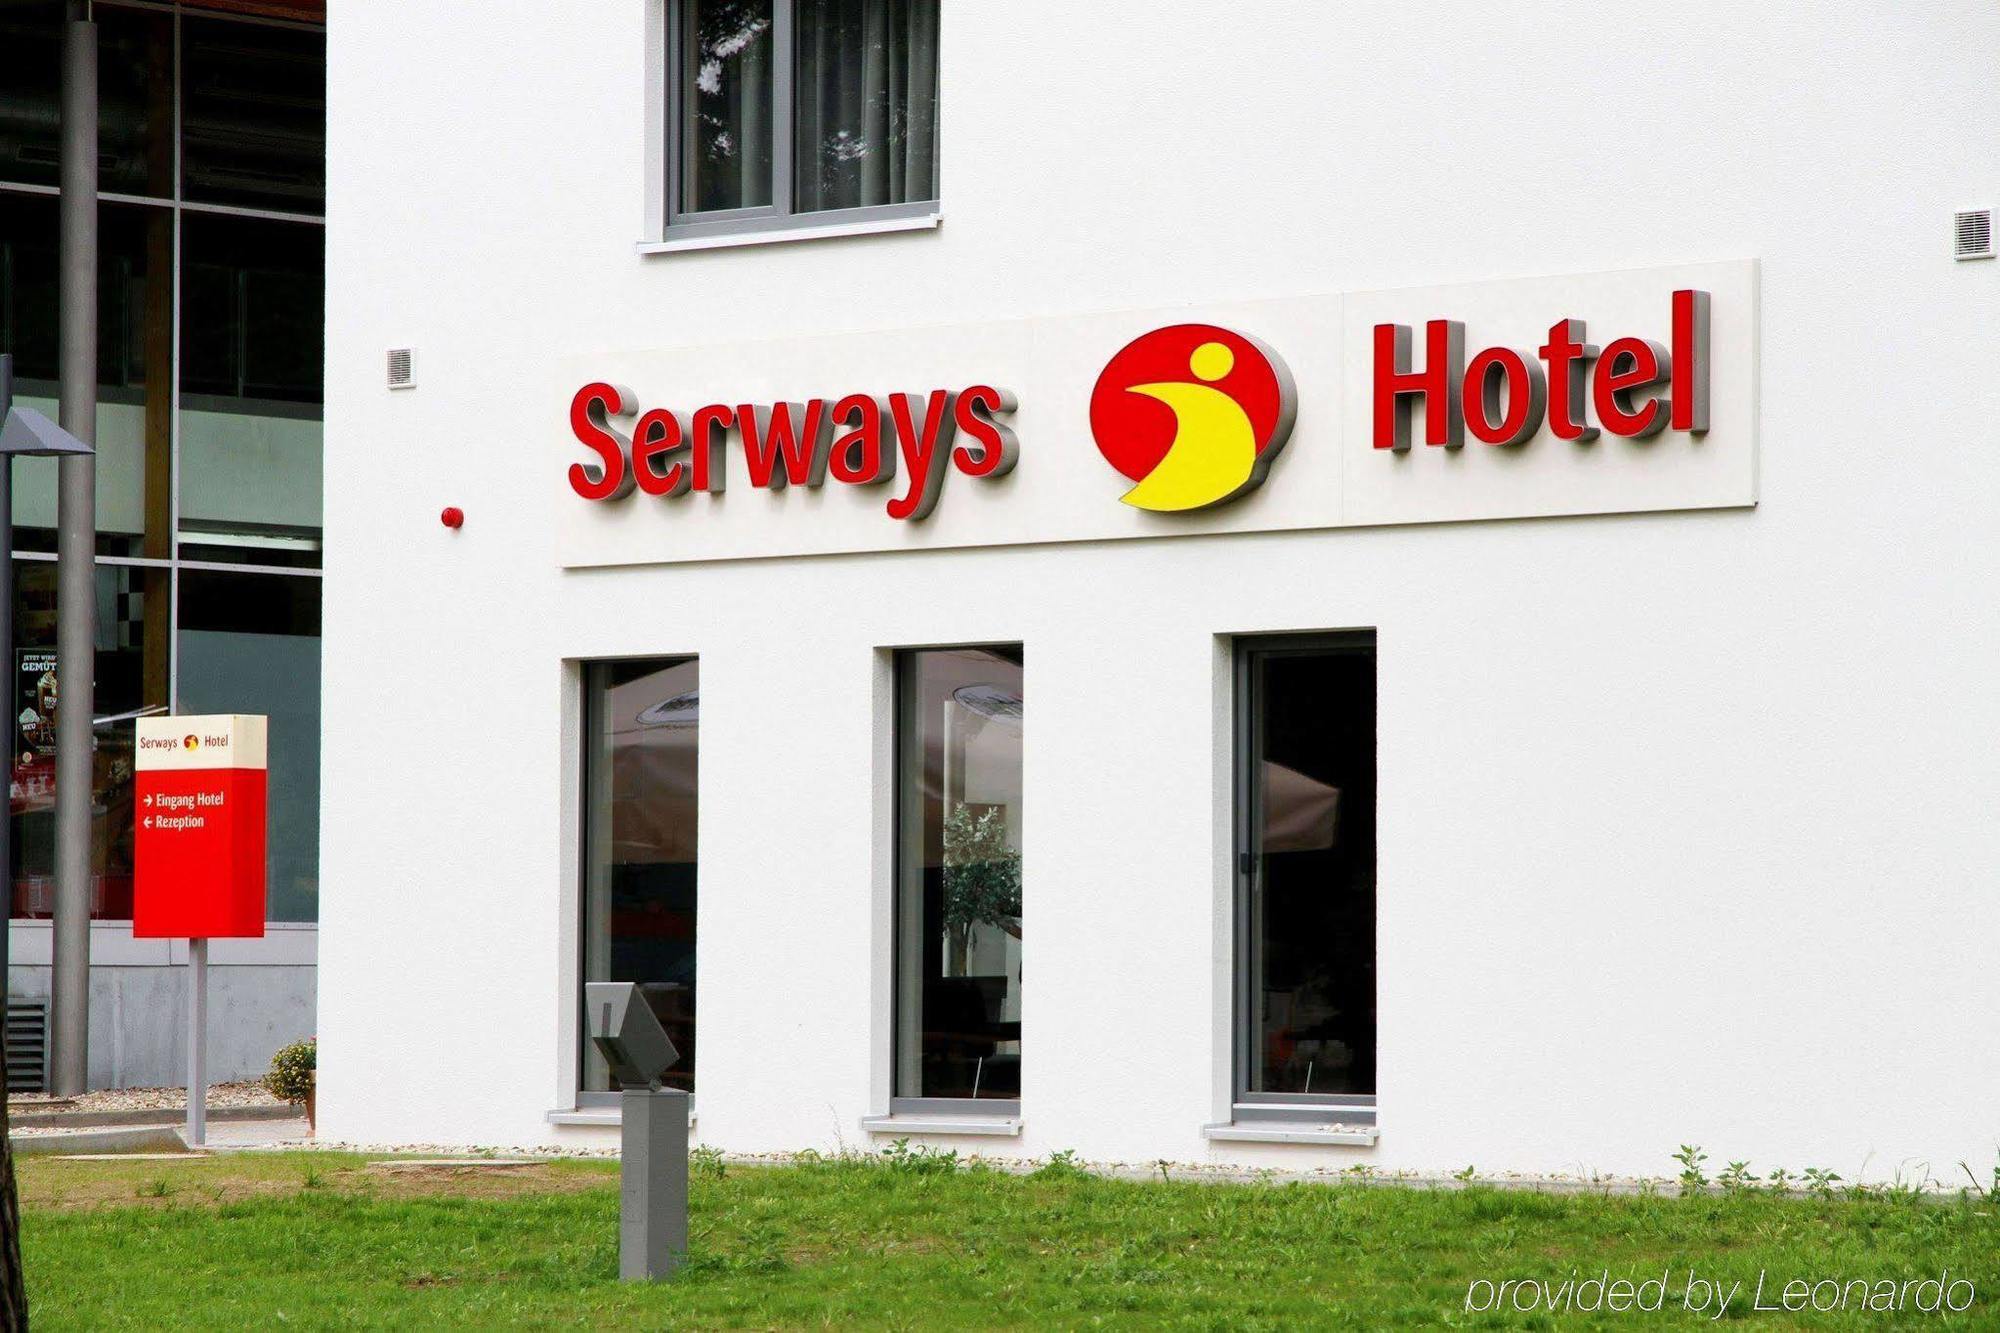 Serways Hotel Siegburg West Exterior foto